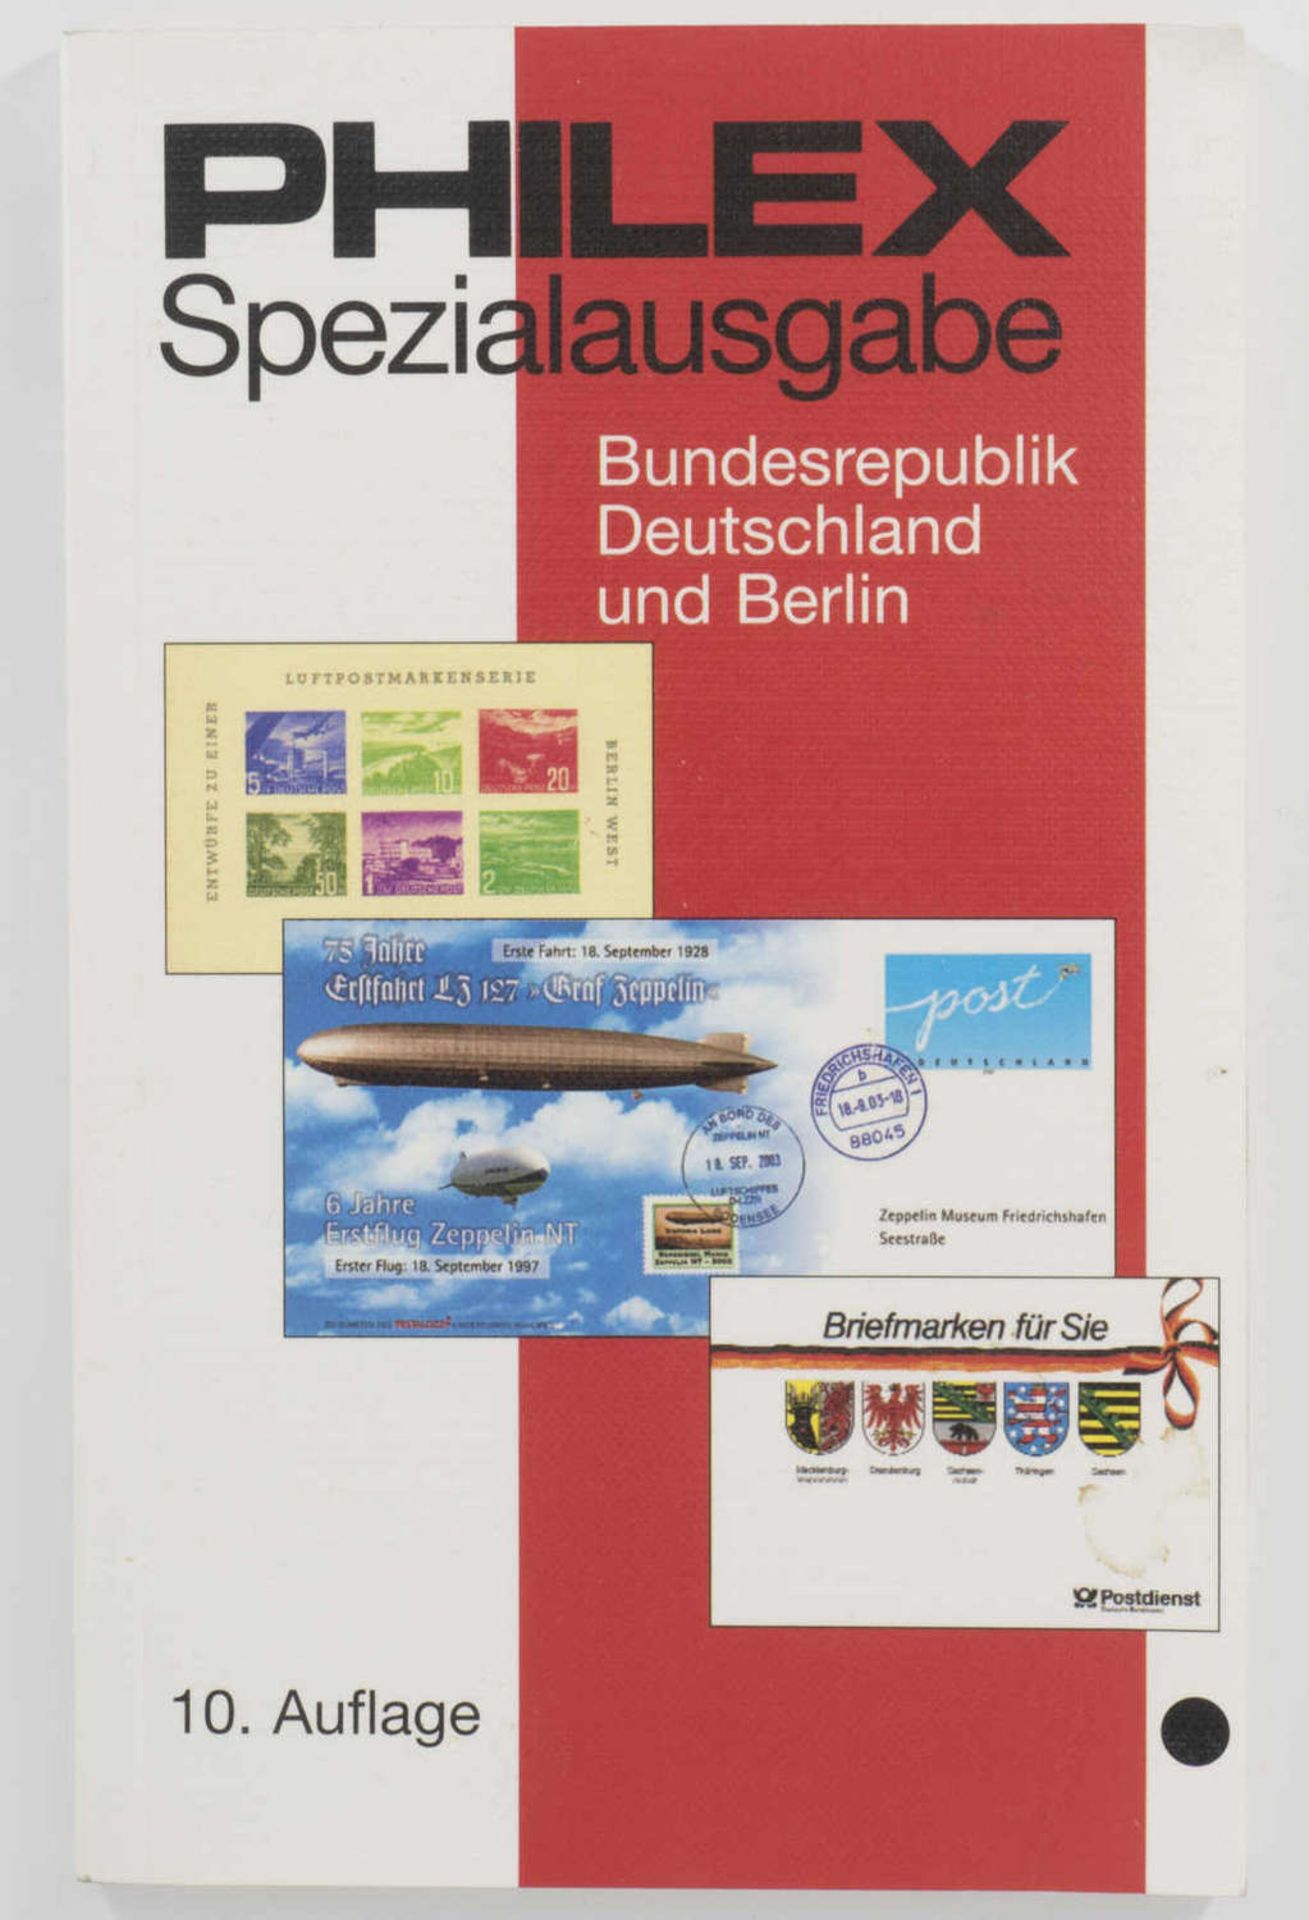 Philex Spezialausgabe Bundesrepublik Deutschland und Berlin. 10. Auflage.Philex special edition